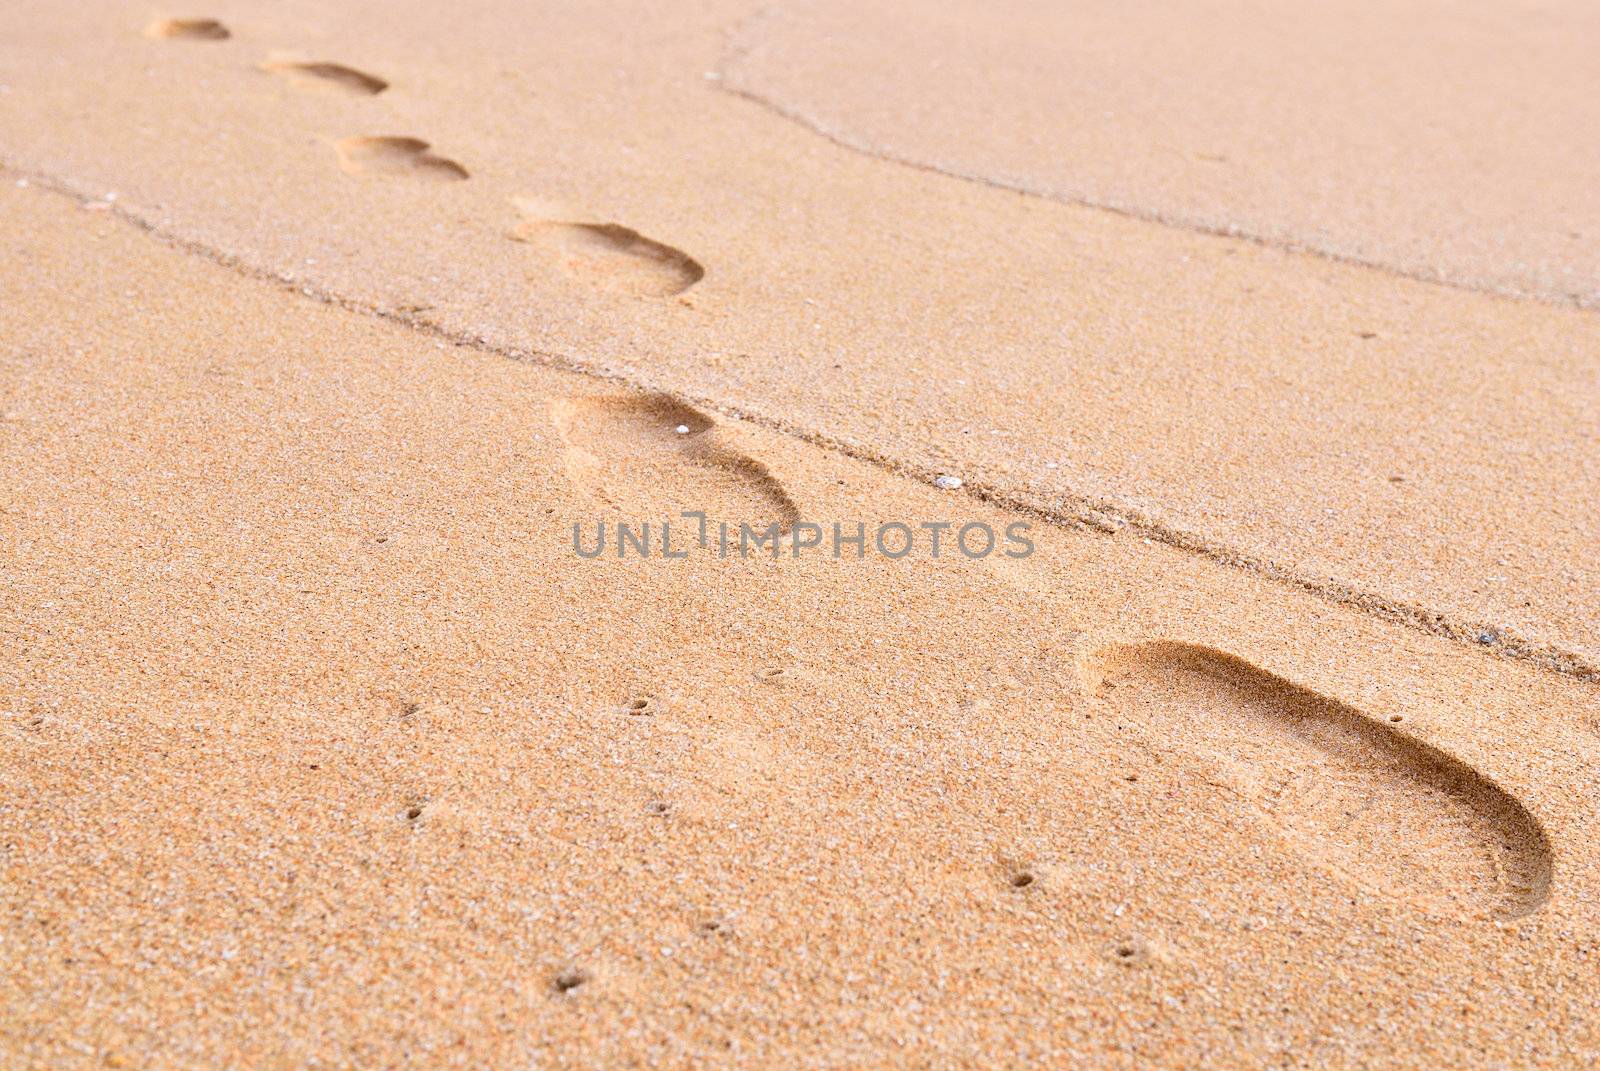 footprint on a sand